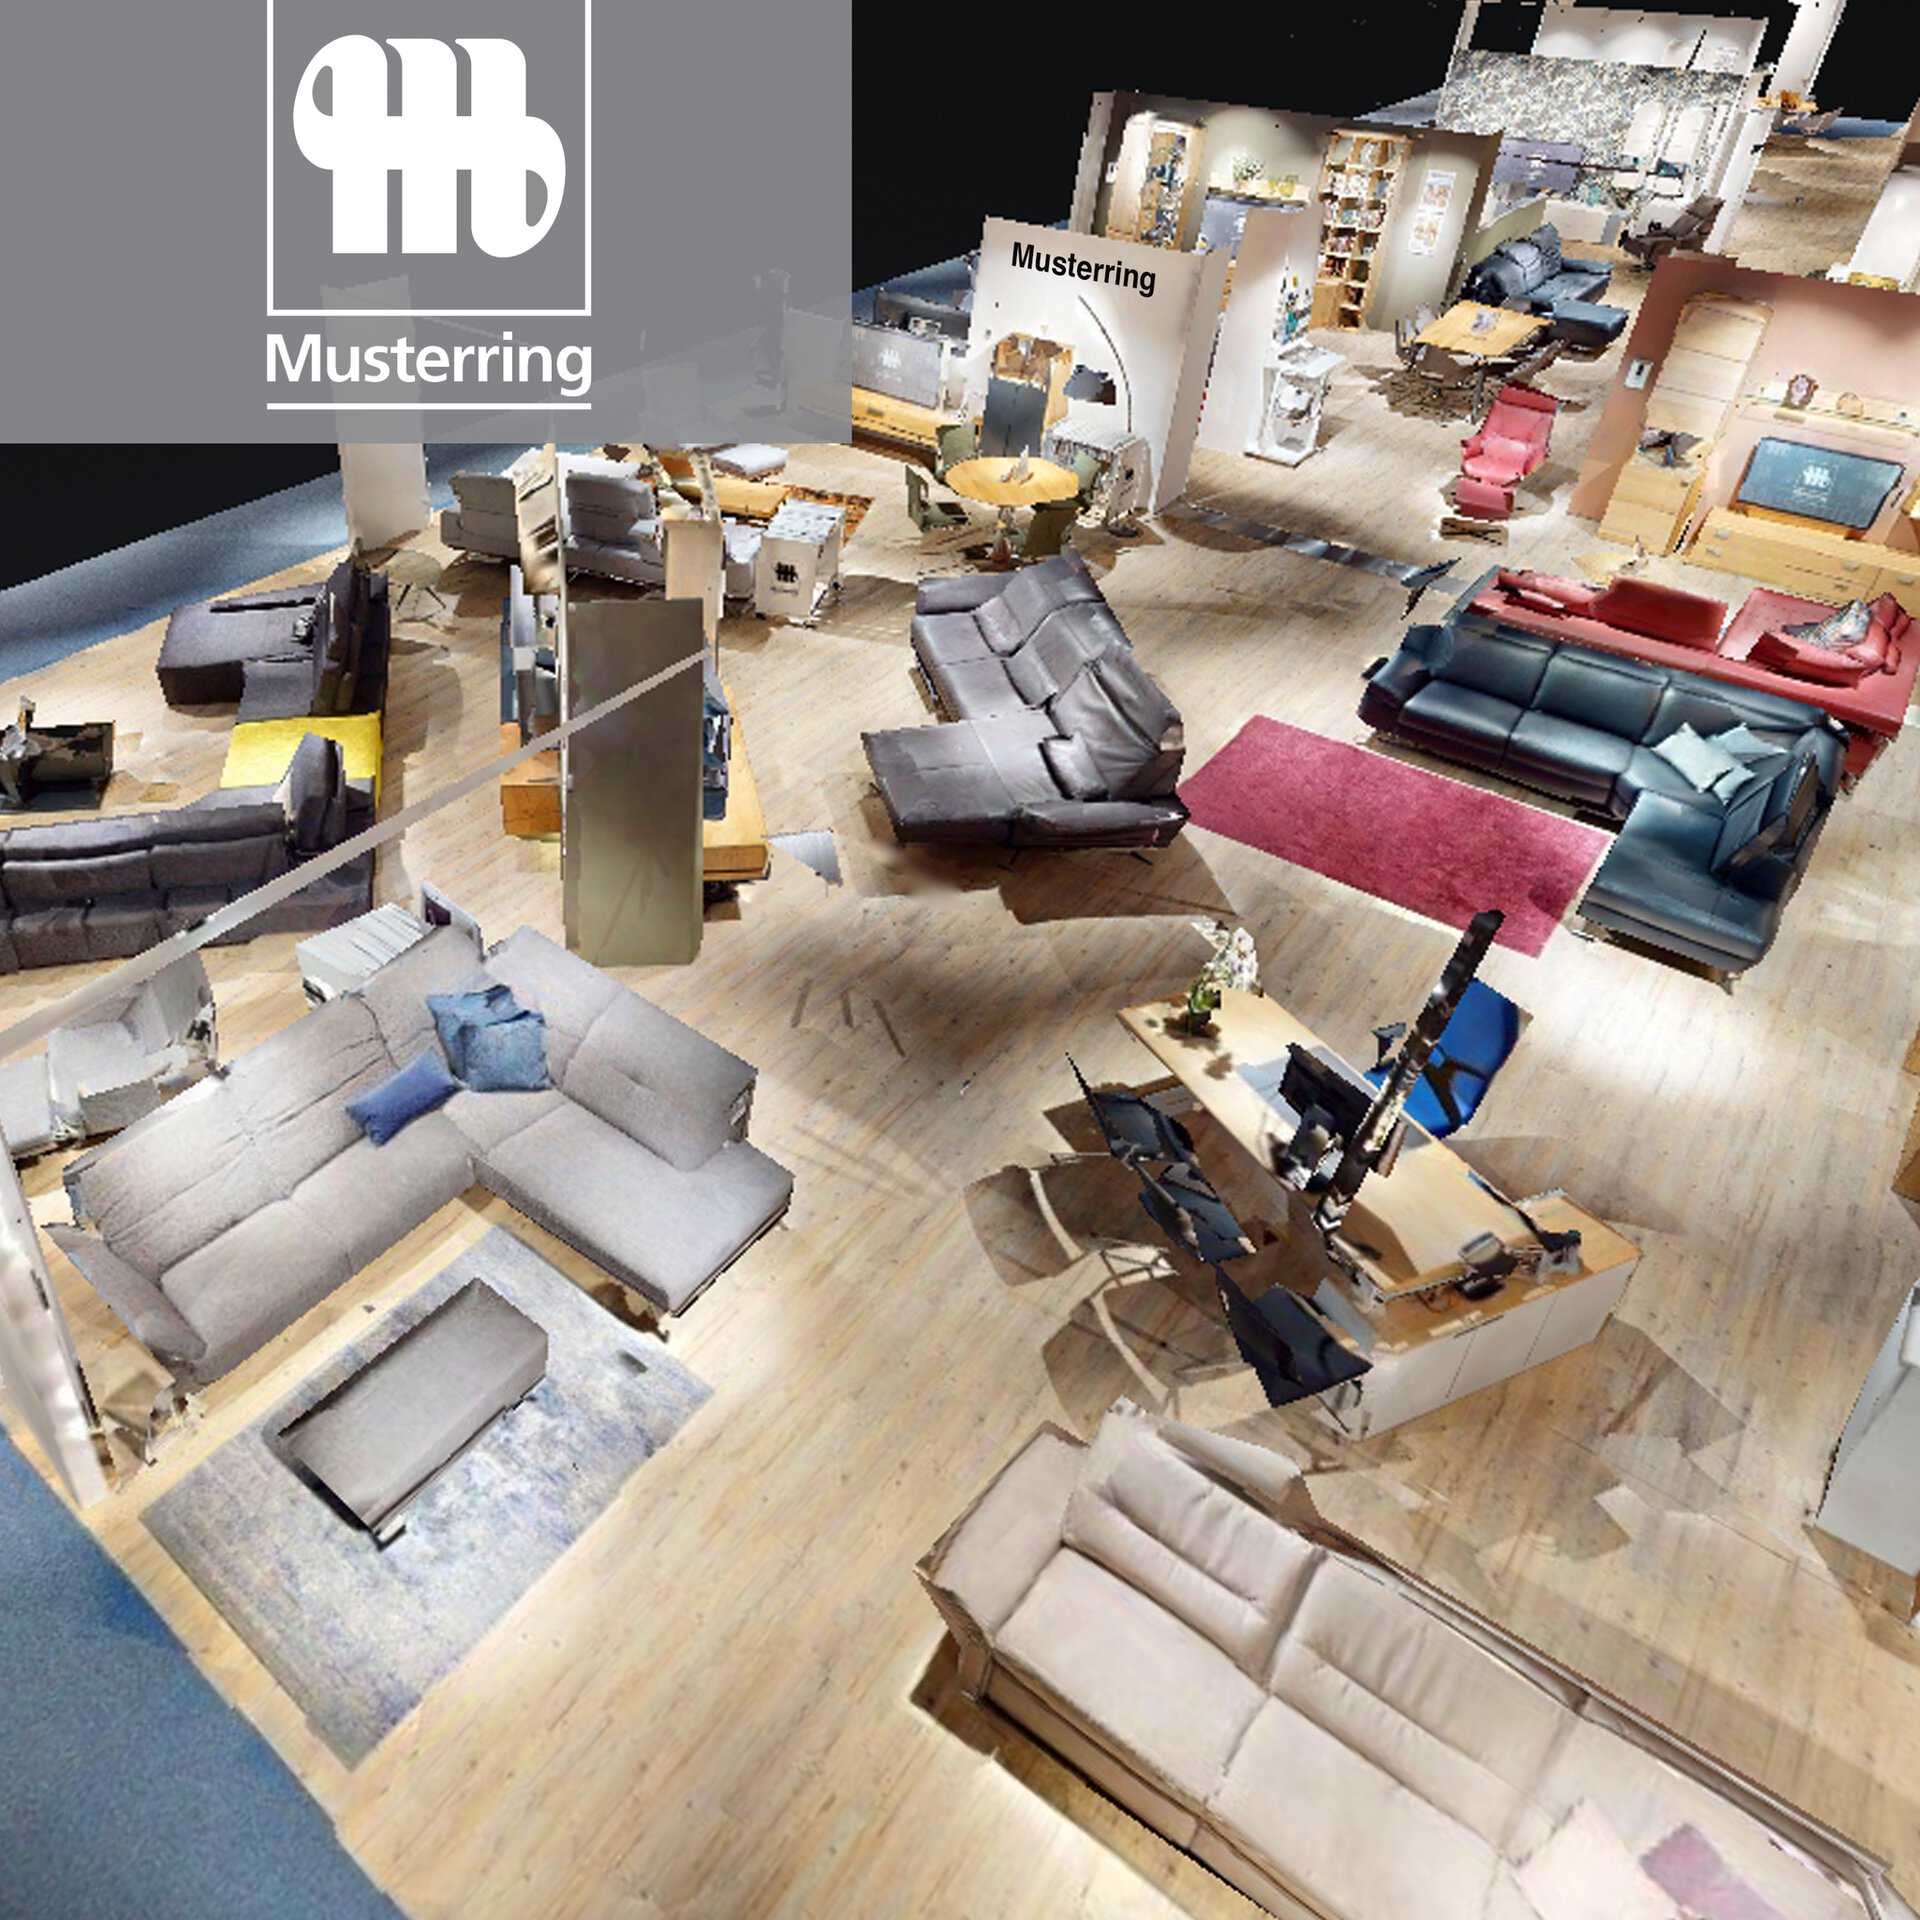 Starten Sie den virtuellen Rundgang durch die Musterring Ausstellung im Einrichtungshaus Möbel Inhofer